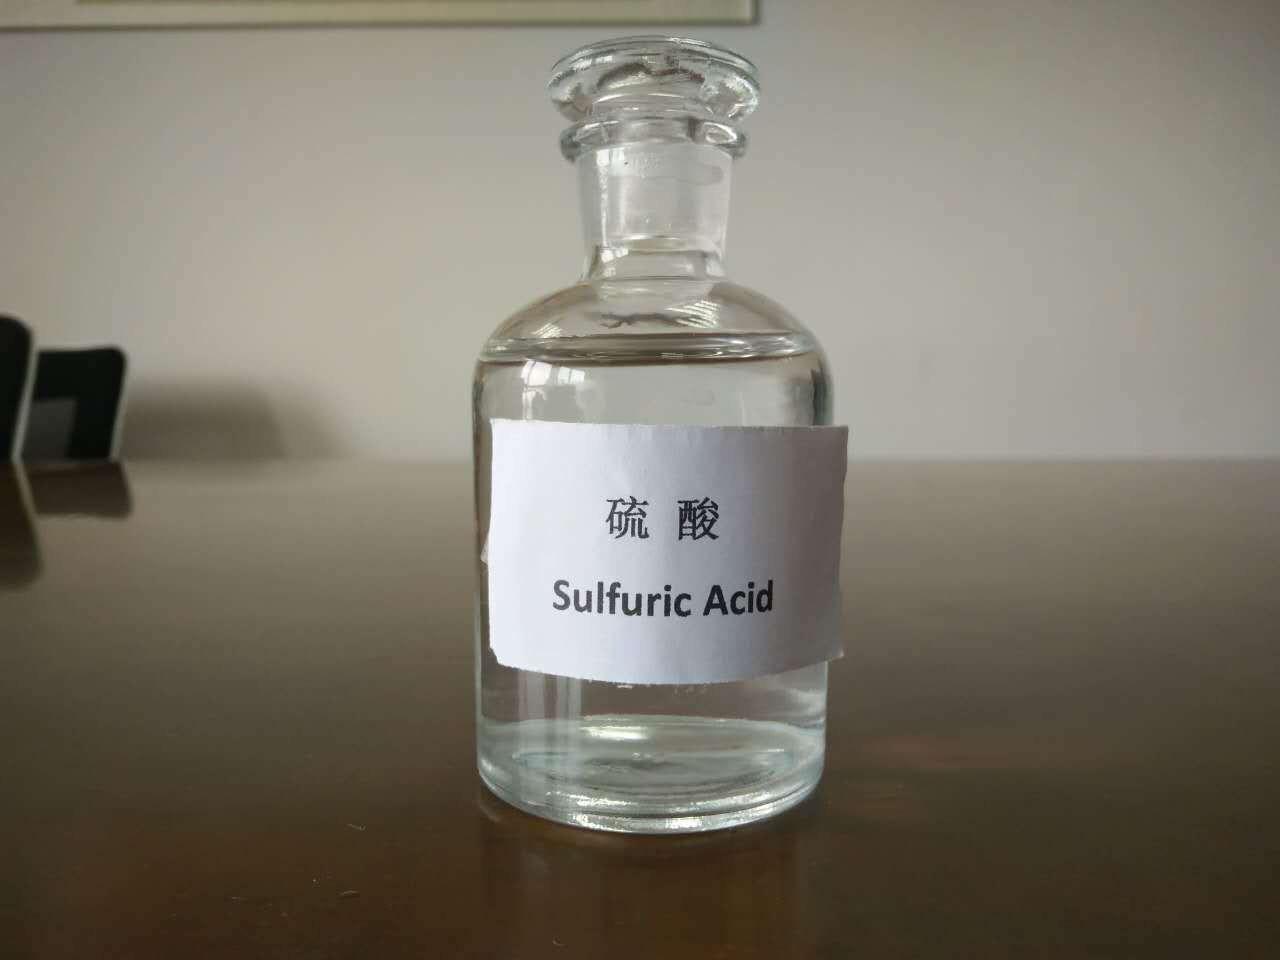 اسید سولفوریک چیست و از کاربردهای گسترده آن چه می دانید؟